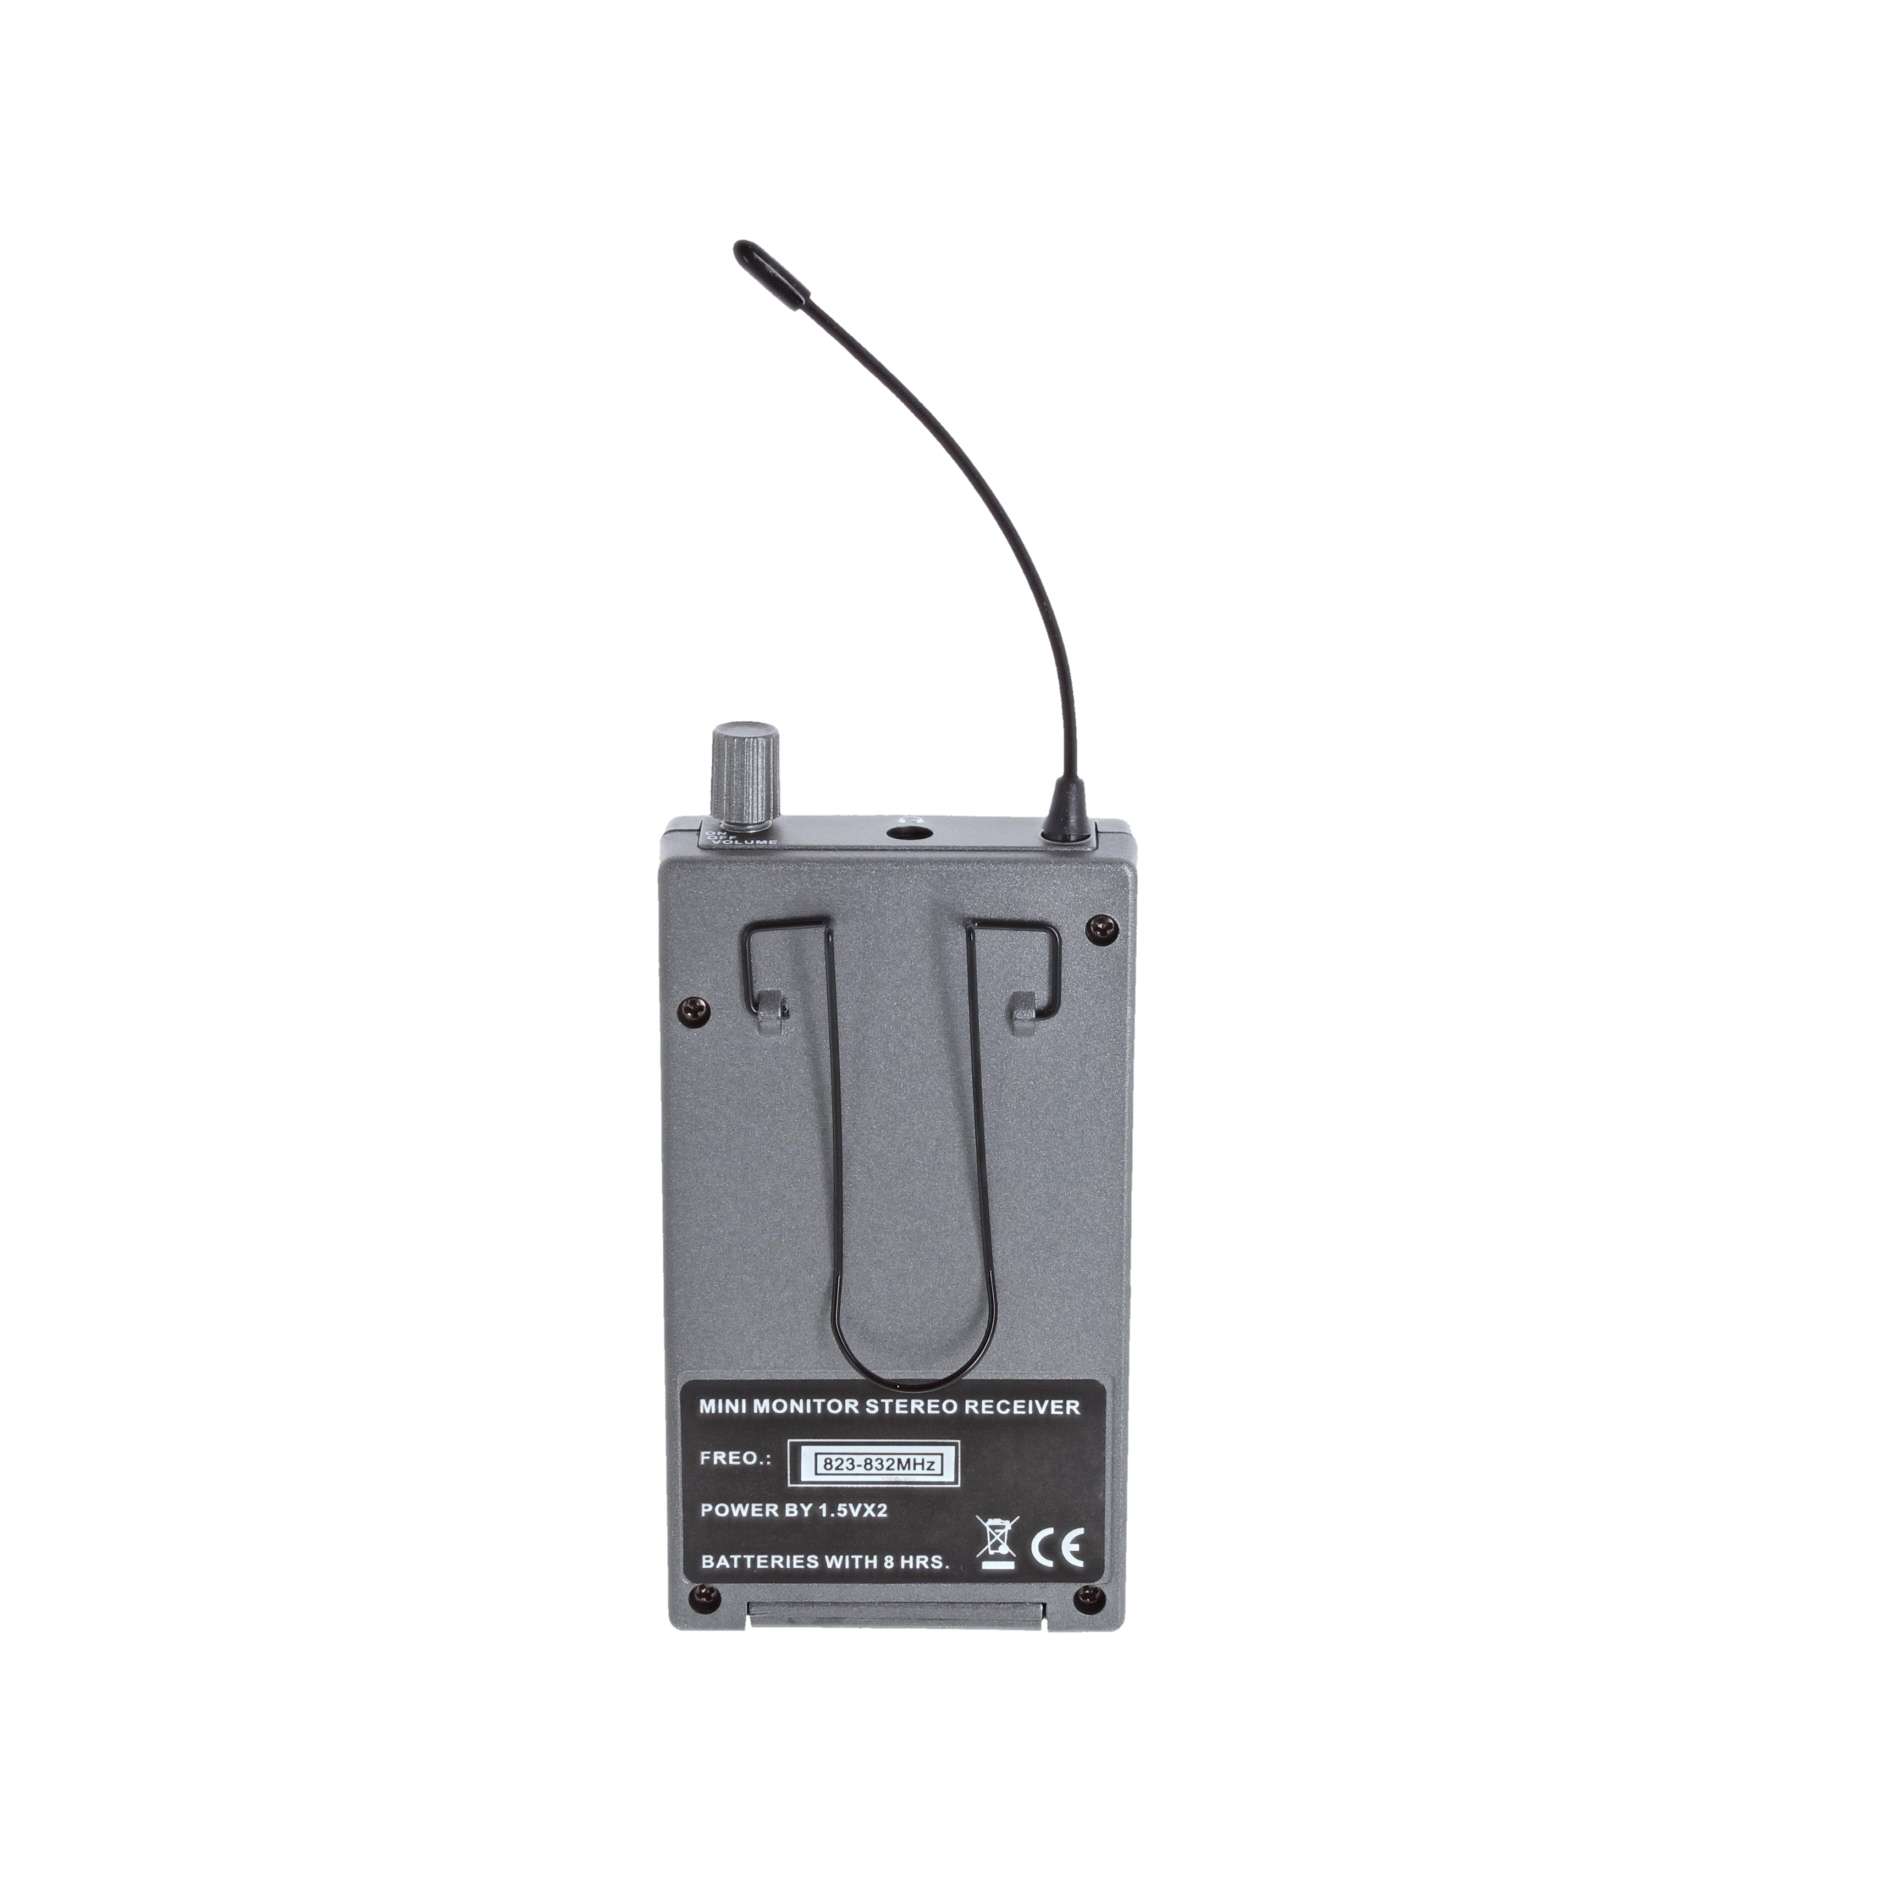 Power Wmp 1000 G1 - Wireless receiver - Variation 1